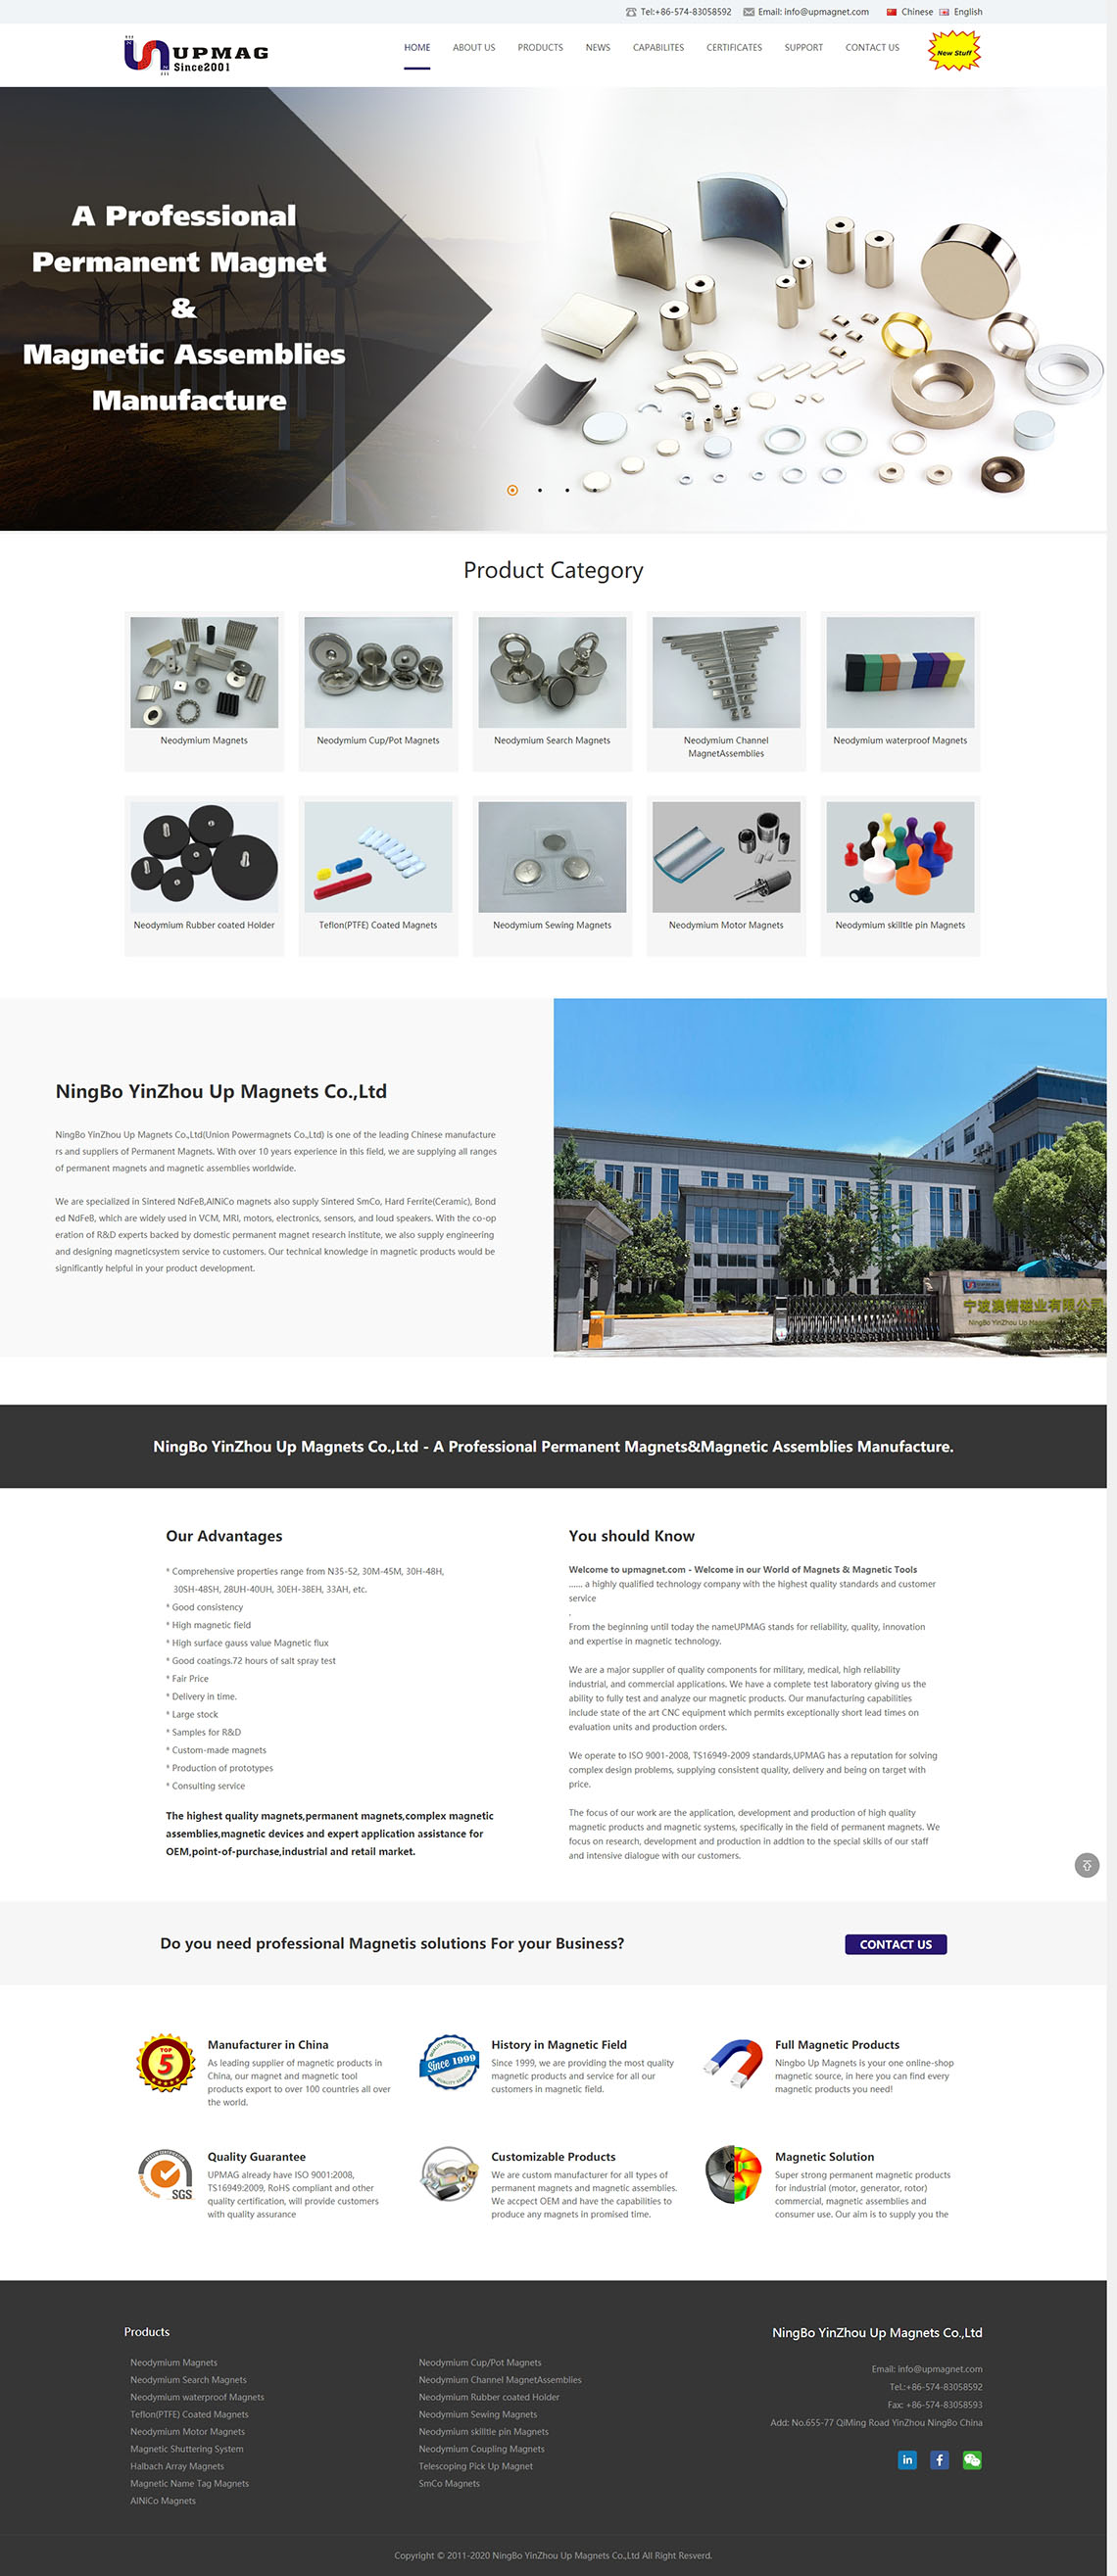 NingBo YinZhou Up Magnets Co.,Ltd